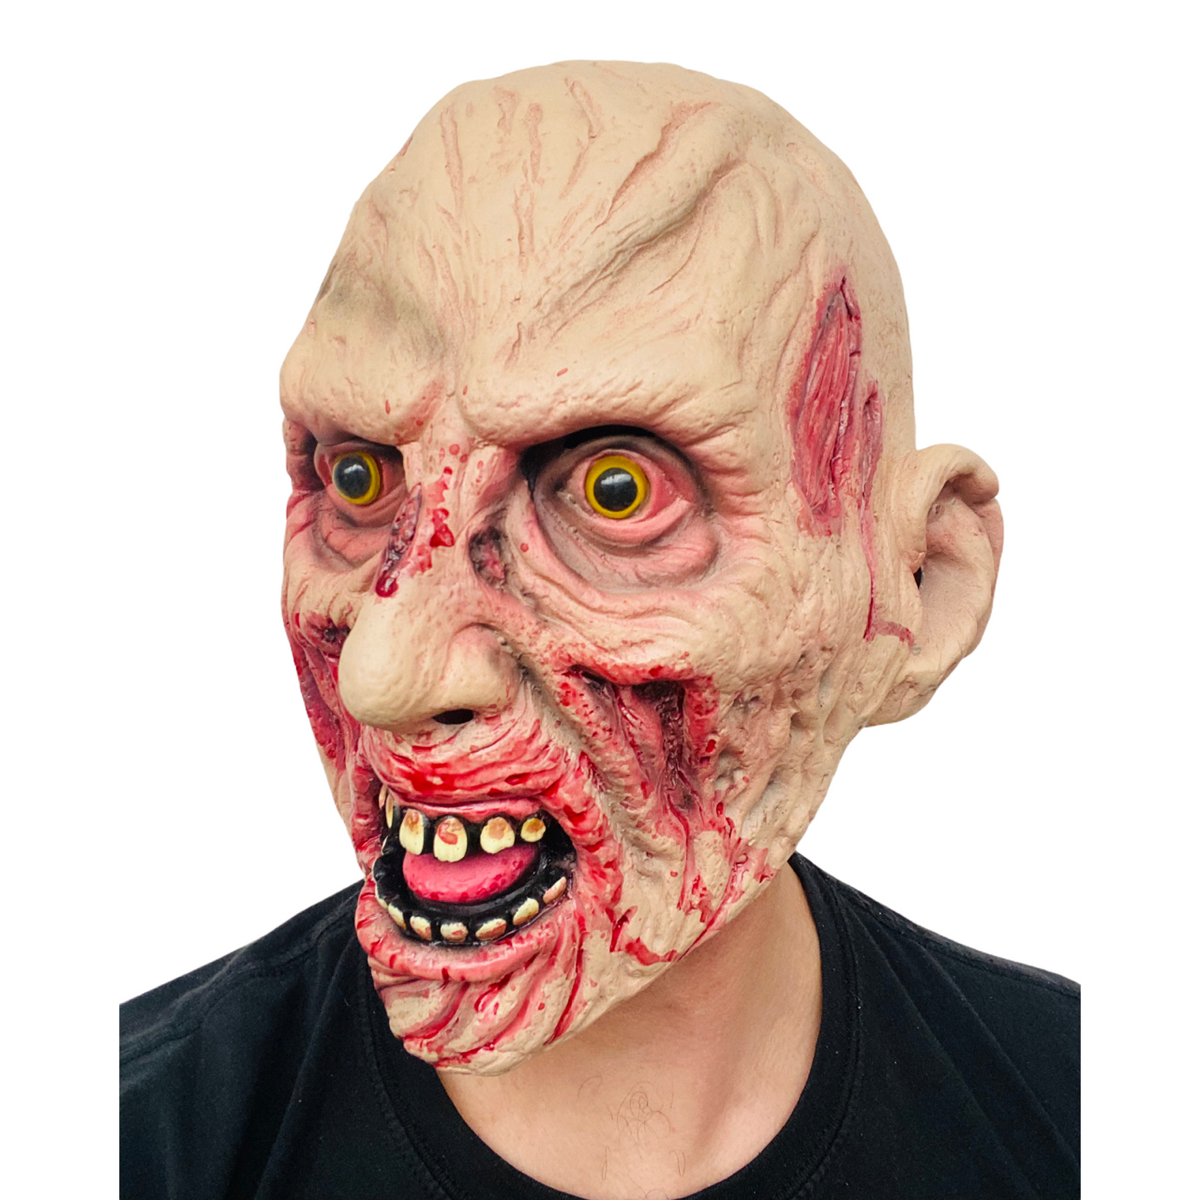 Zombie-Maske.